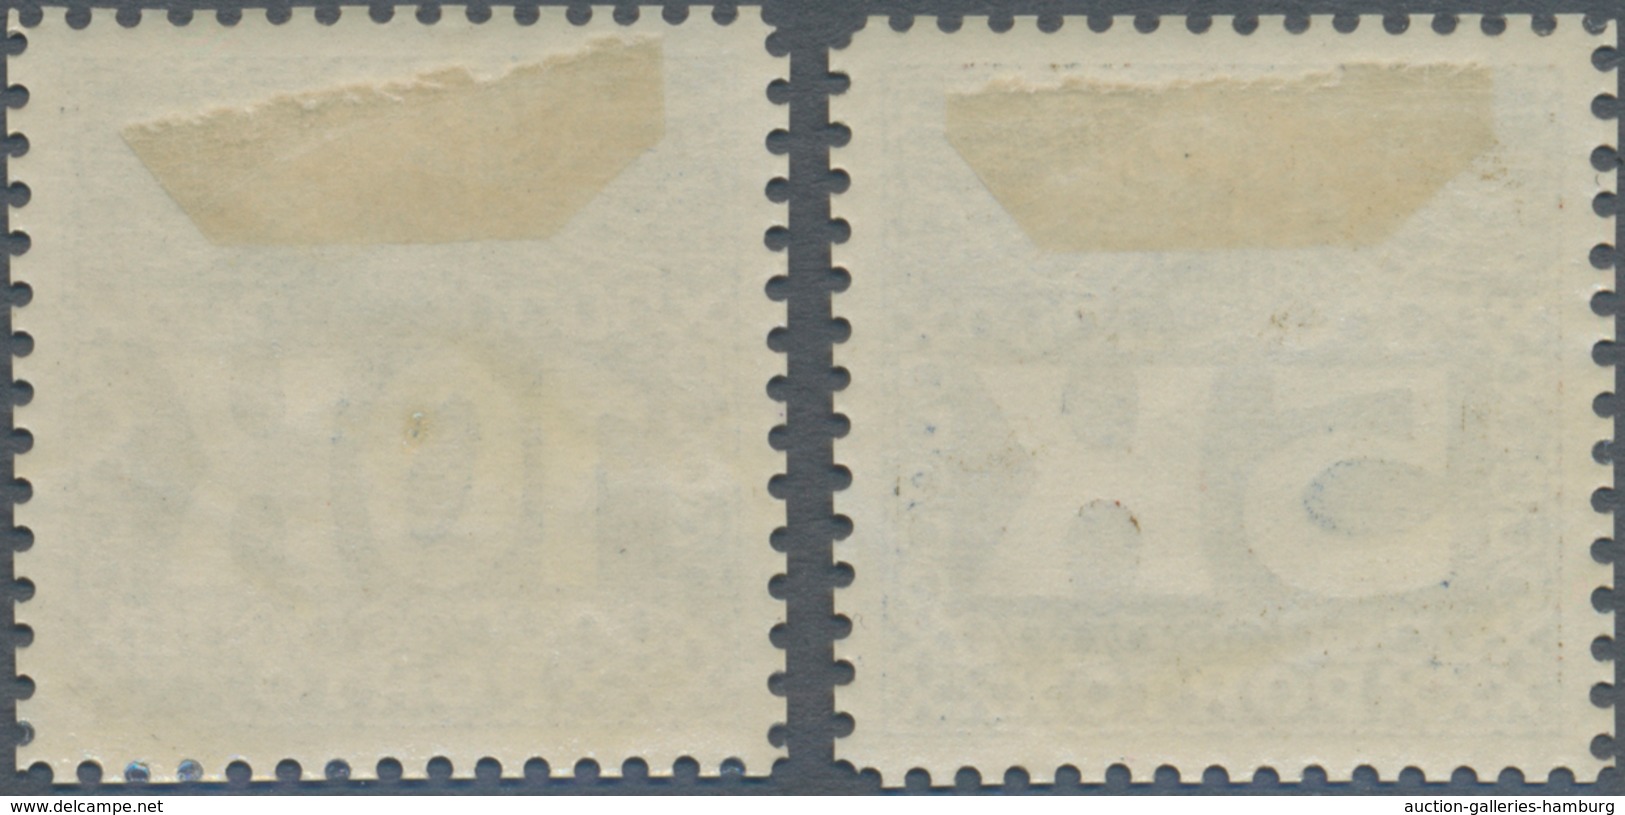 Österreich - Portomarken: 1911, 5 Und 10 Kr Dunkelblau, Gezähnte Ministervorlagen In Ungebrauchter P - Taxe